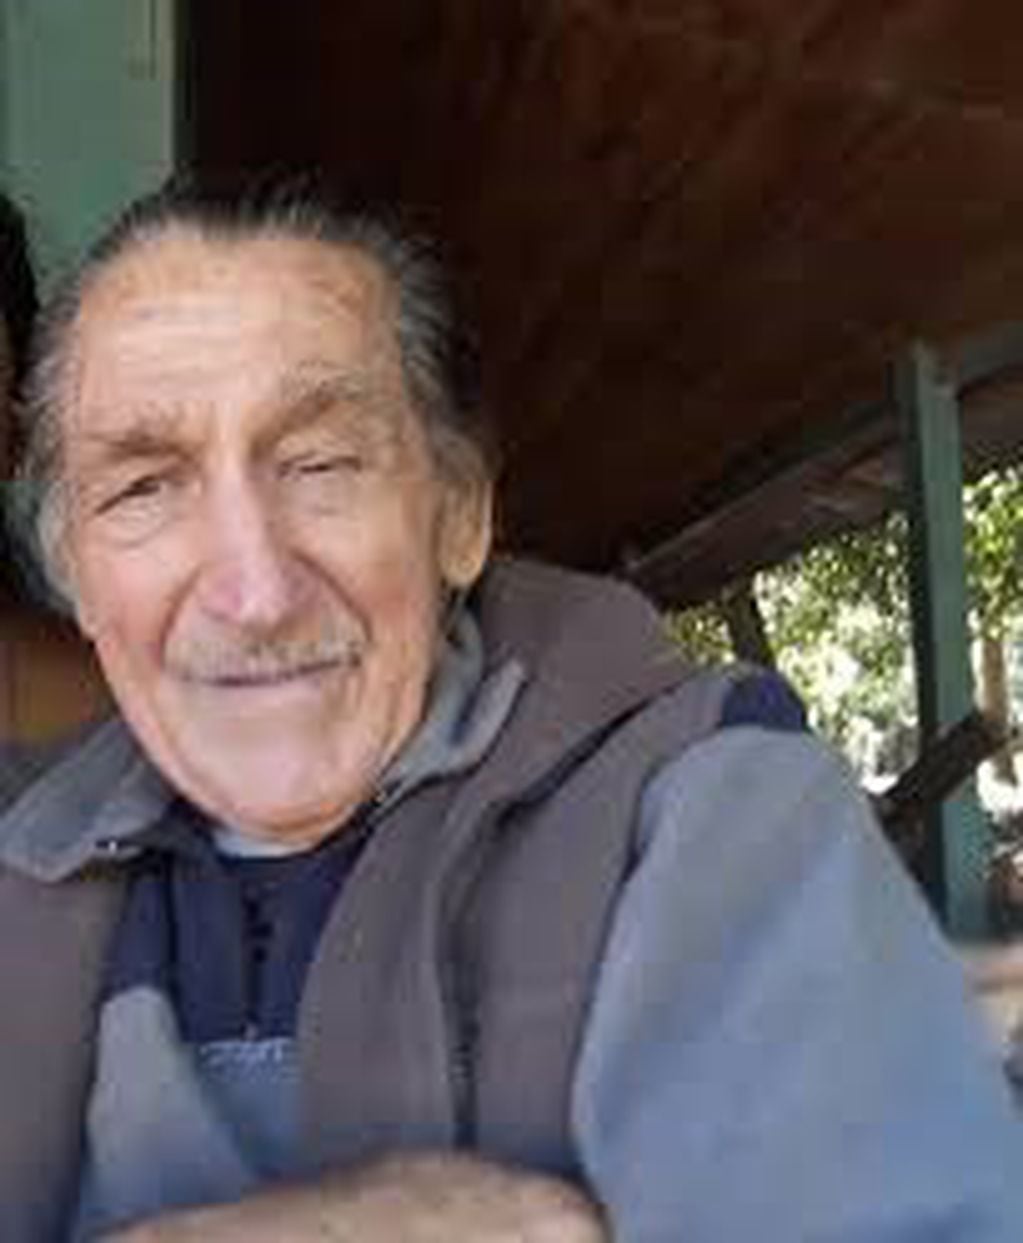 Rodolfo Zembruski anciando de 83 años extraviado en Misiones. (MisionesOnline)